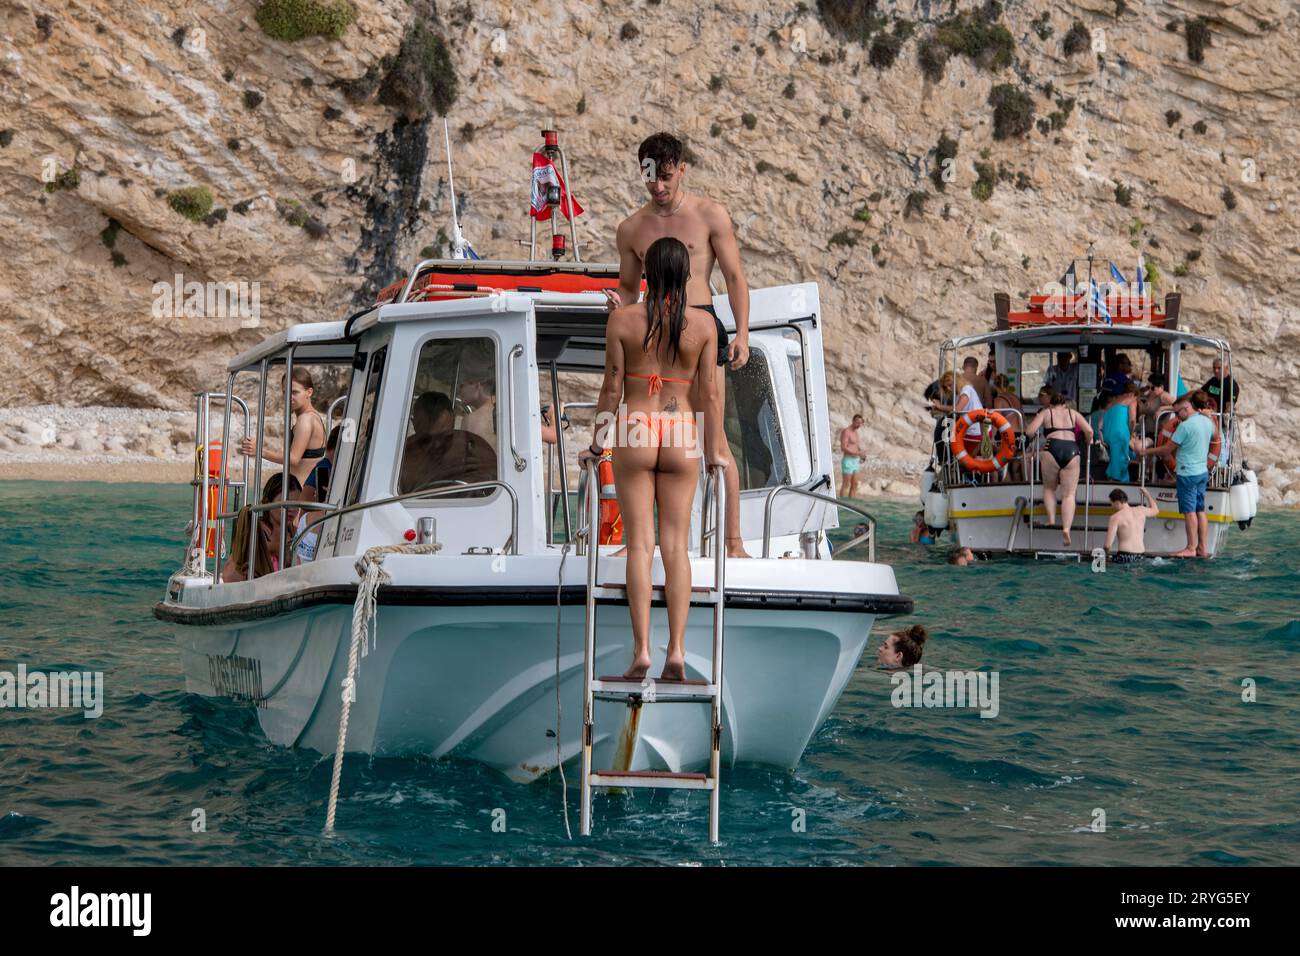 baigneurs ou nageurs sur un petit bateau touristique sur l'île grecque de zante ou zakynthos. femme portant révélant le bikini embarquement bateau de plaisance nageur. Banque D'Images